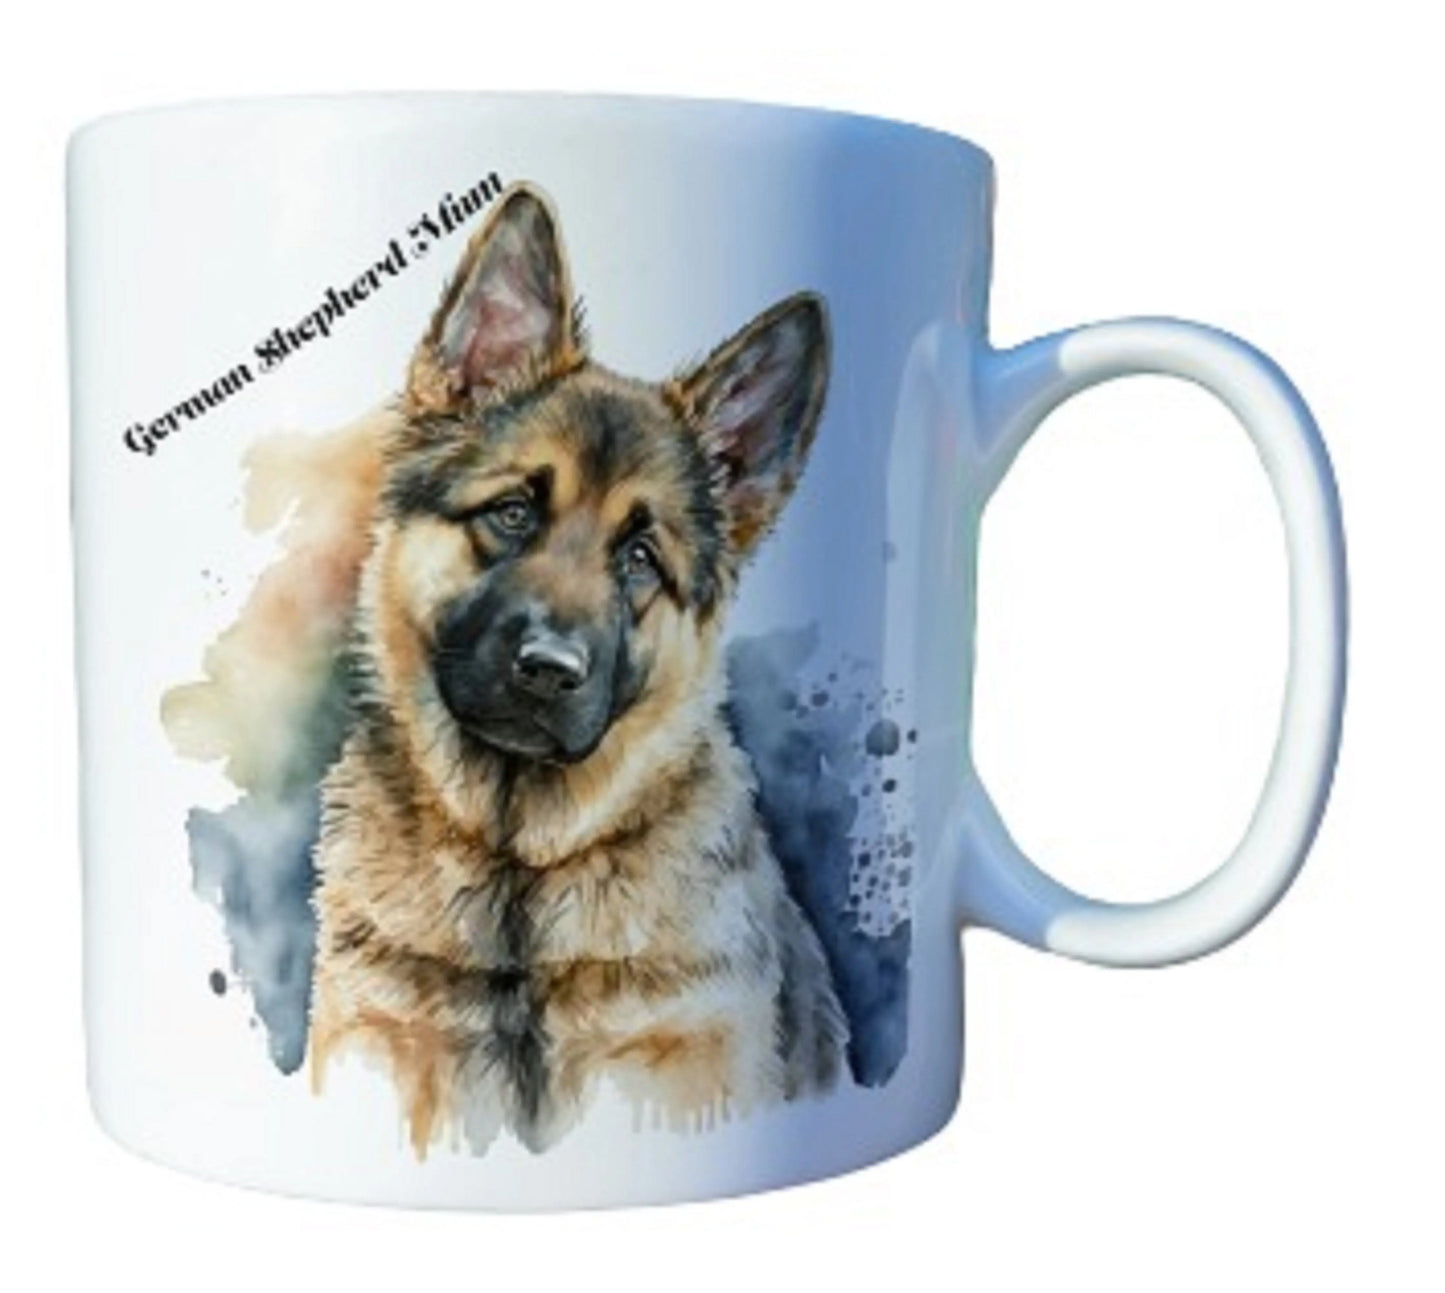  Beautiful Personalised German Shepherd Coffee Mugs - Choice of Designs by Free Spirit Accessories sold by Free Spirit Accessories